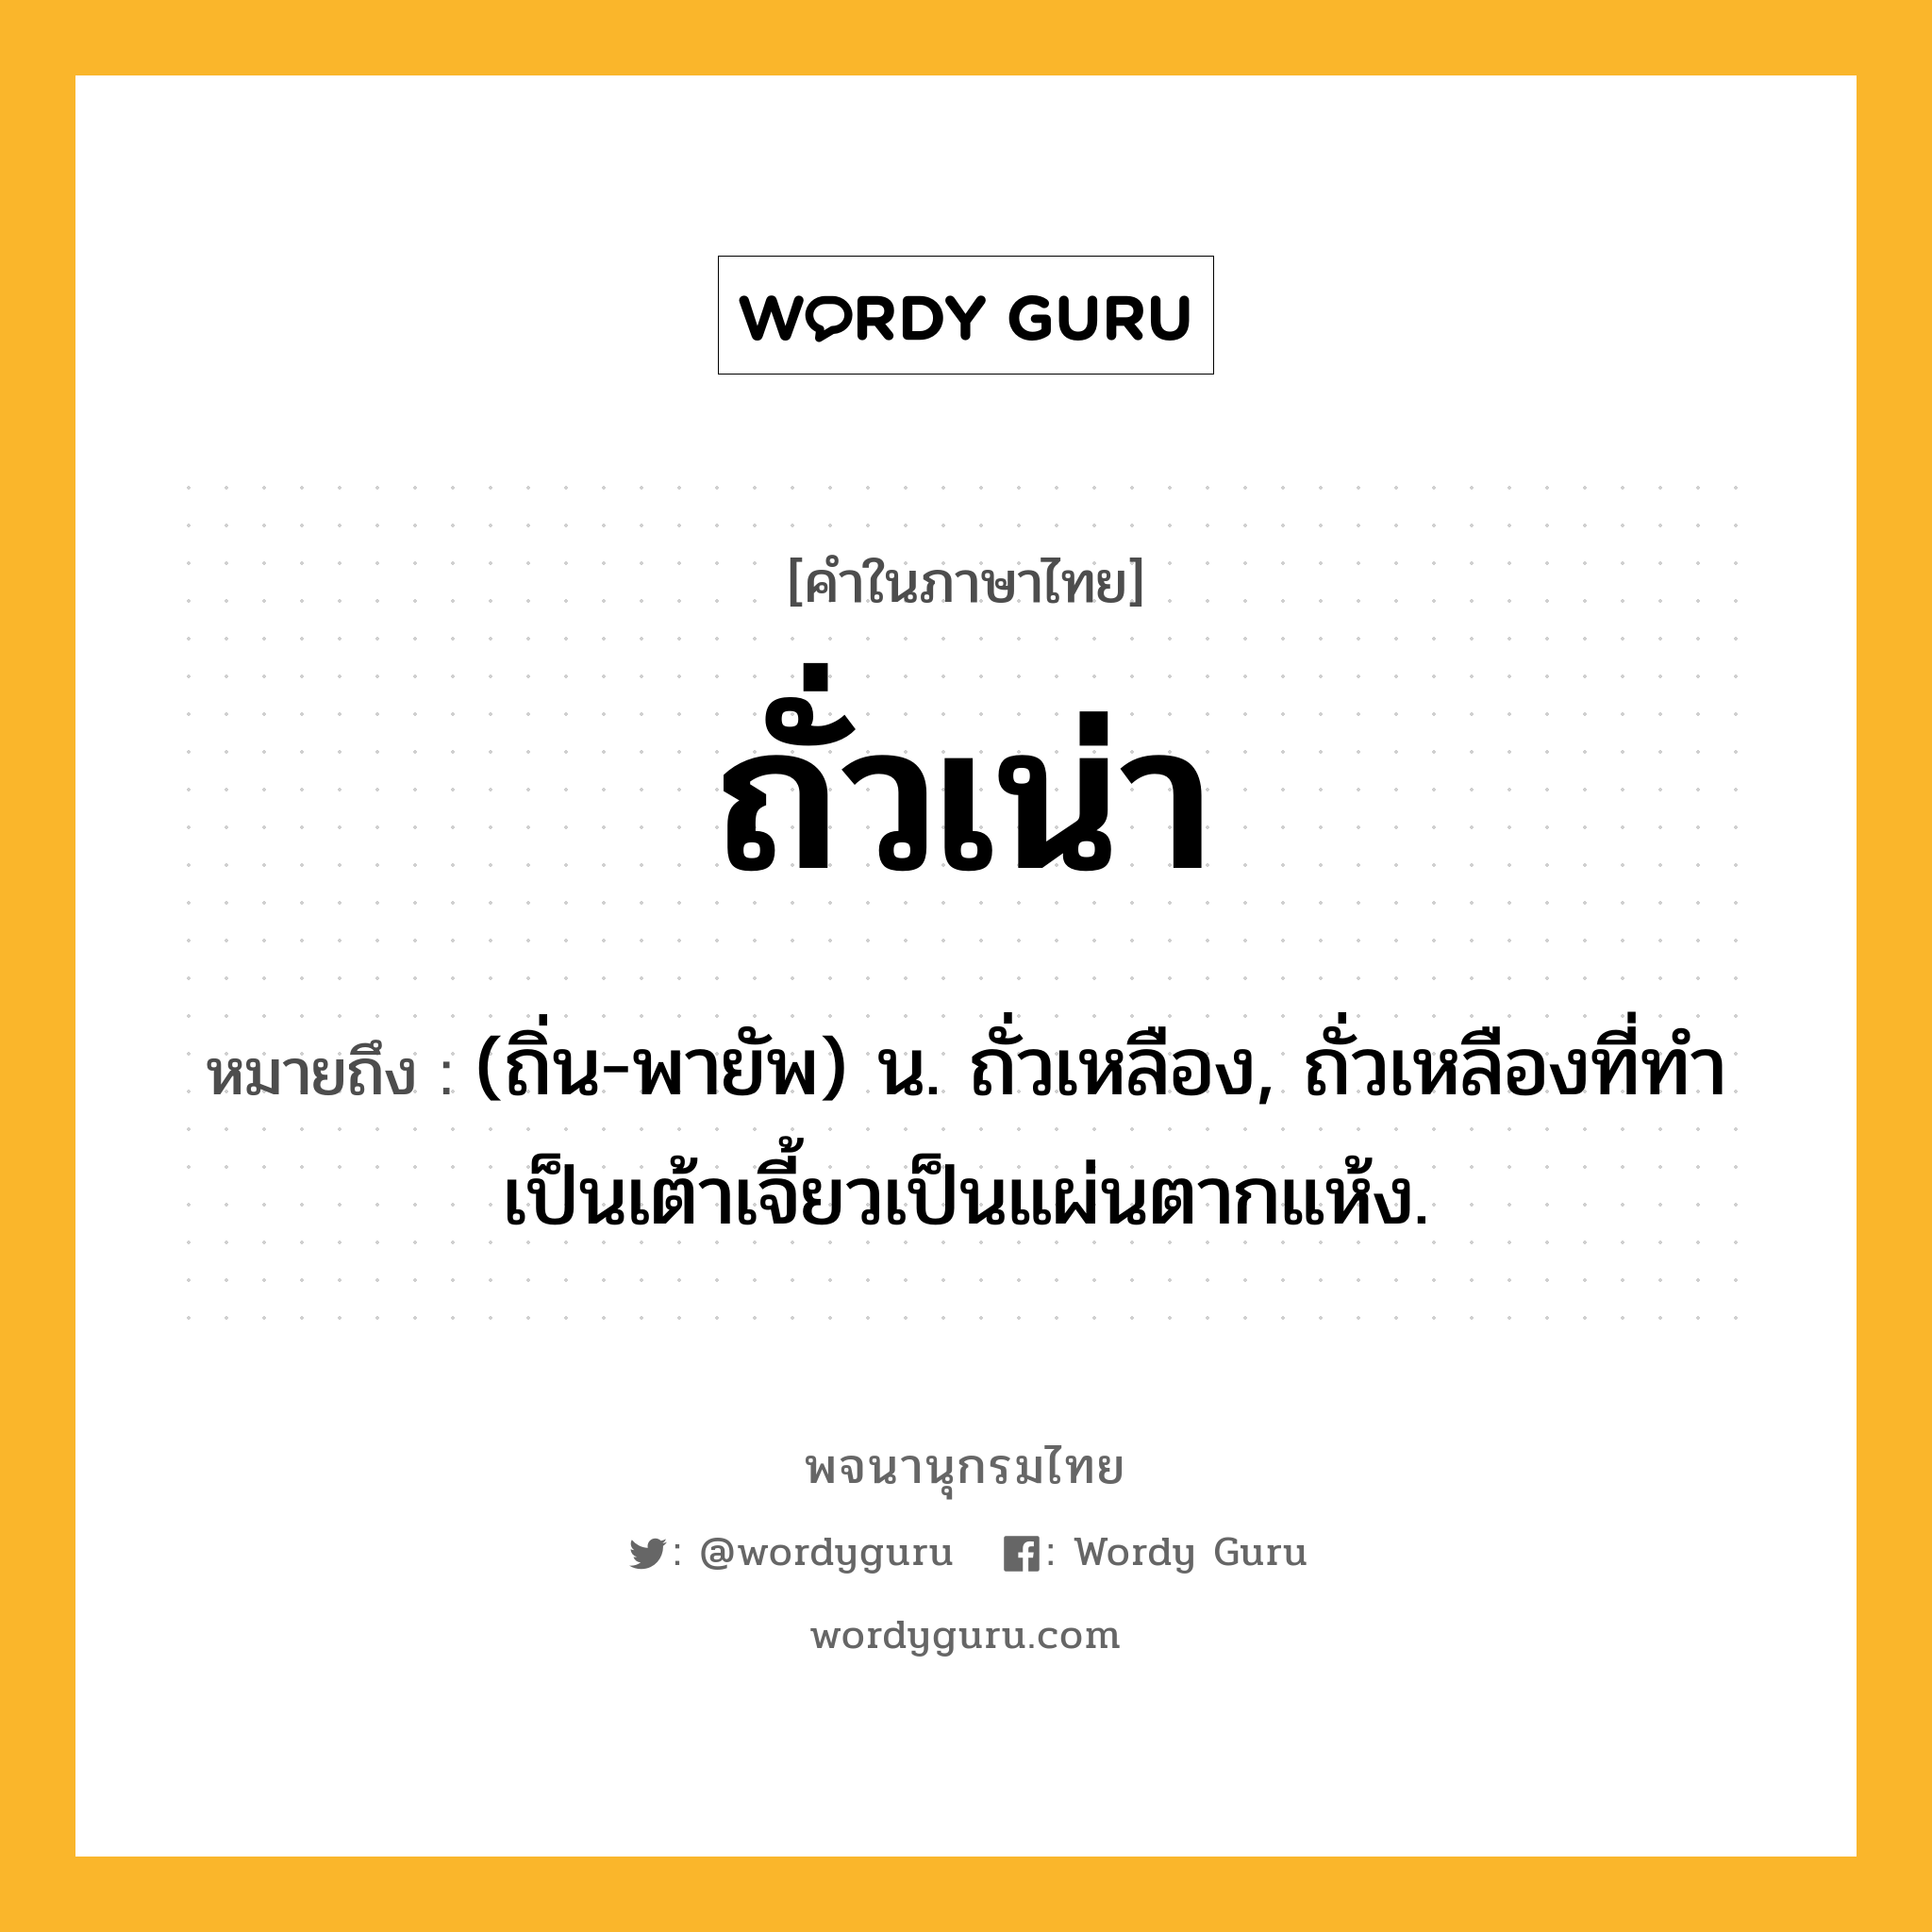 ถั่วเน่า หมายถึงอะไร?, คำในภาษาไทย ถั่วเน่า หมายถึง (ถิ่น-พายัพ) น. ถั่วเหลือง, ถั่วเหลืองที่ทำเป็นเต้าเจี้ยวเป็นแผ่นตากแห้ง.